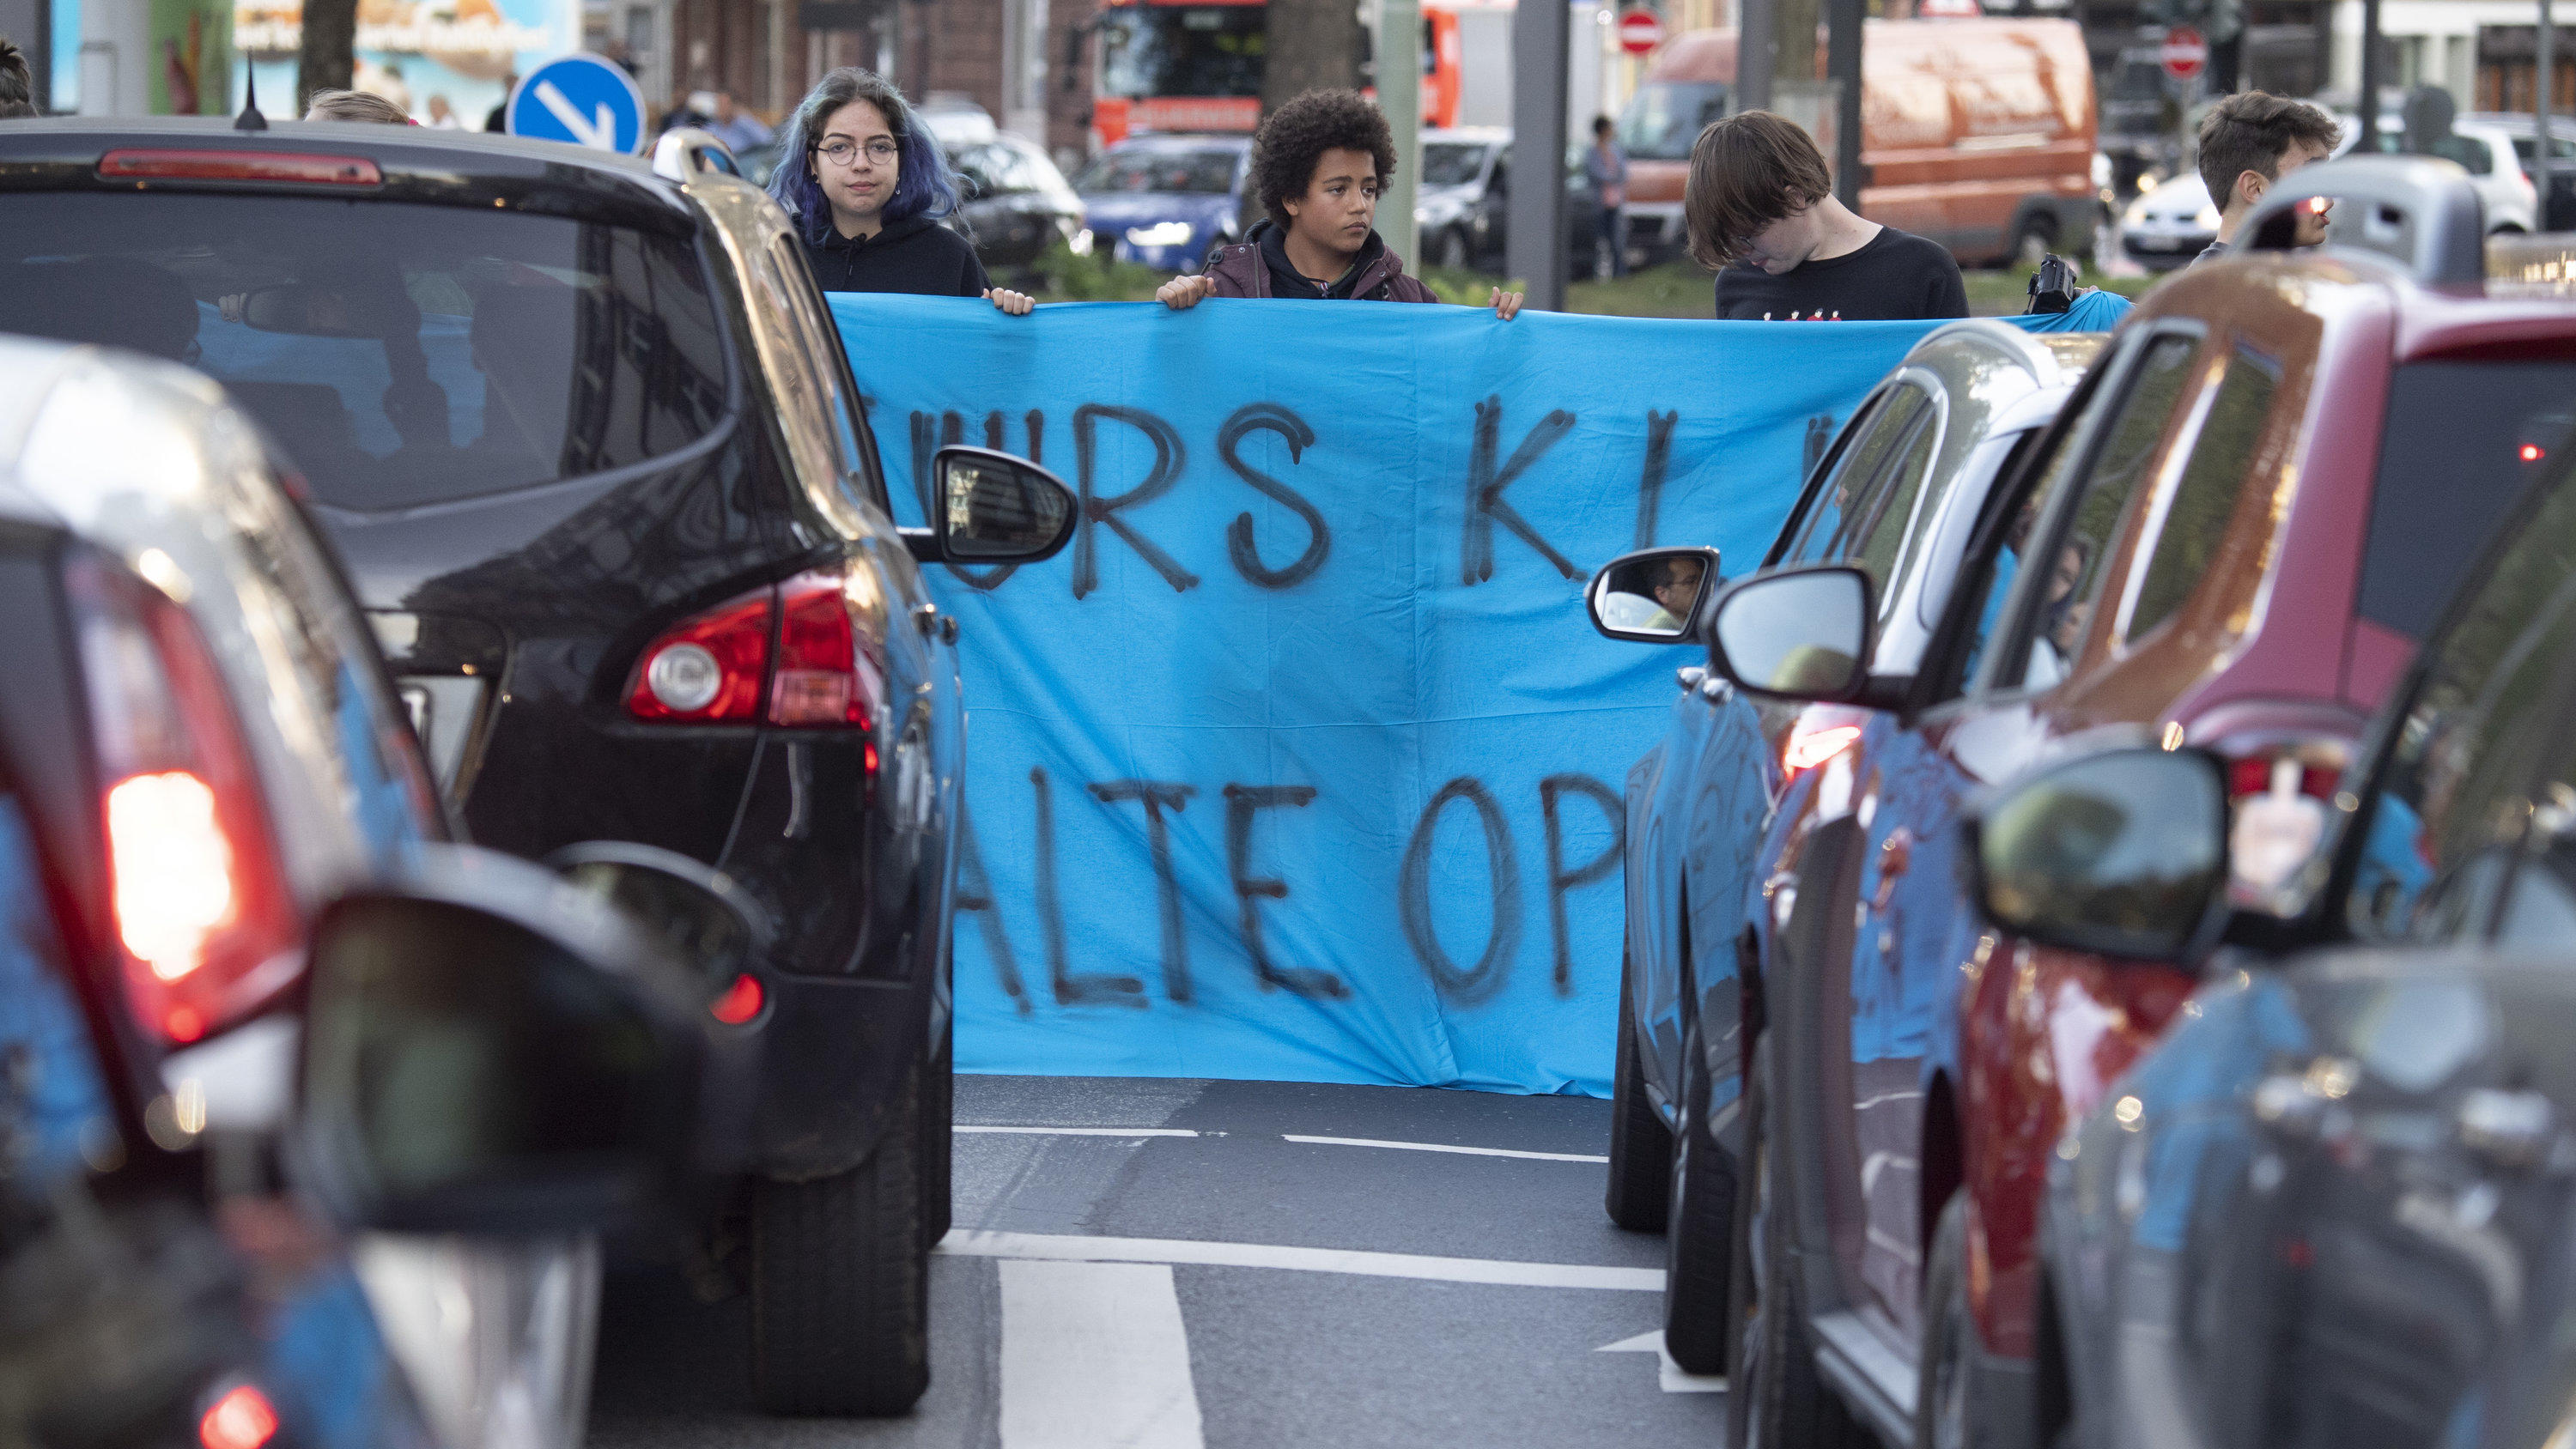 Demonstranten verschiedener Aktionsbündnisse blockieren den Verkehr auf dem Baseler Platz. Die Demonstranten folgen dem Aufruf der Bewegung Fridays for Future und wollen für mehr Klimaschutz kämpfen. Sie wollen dam